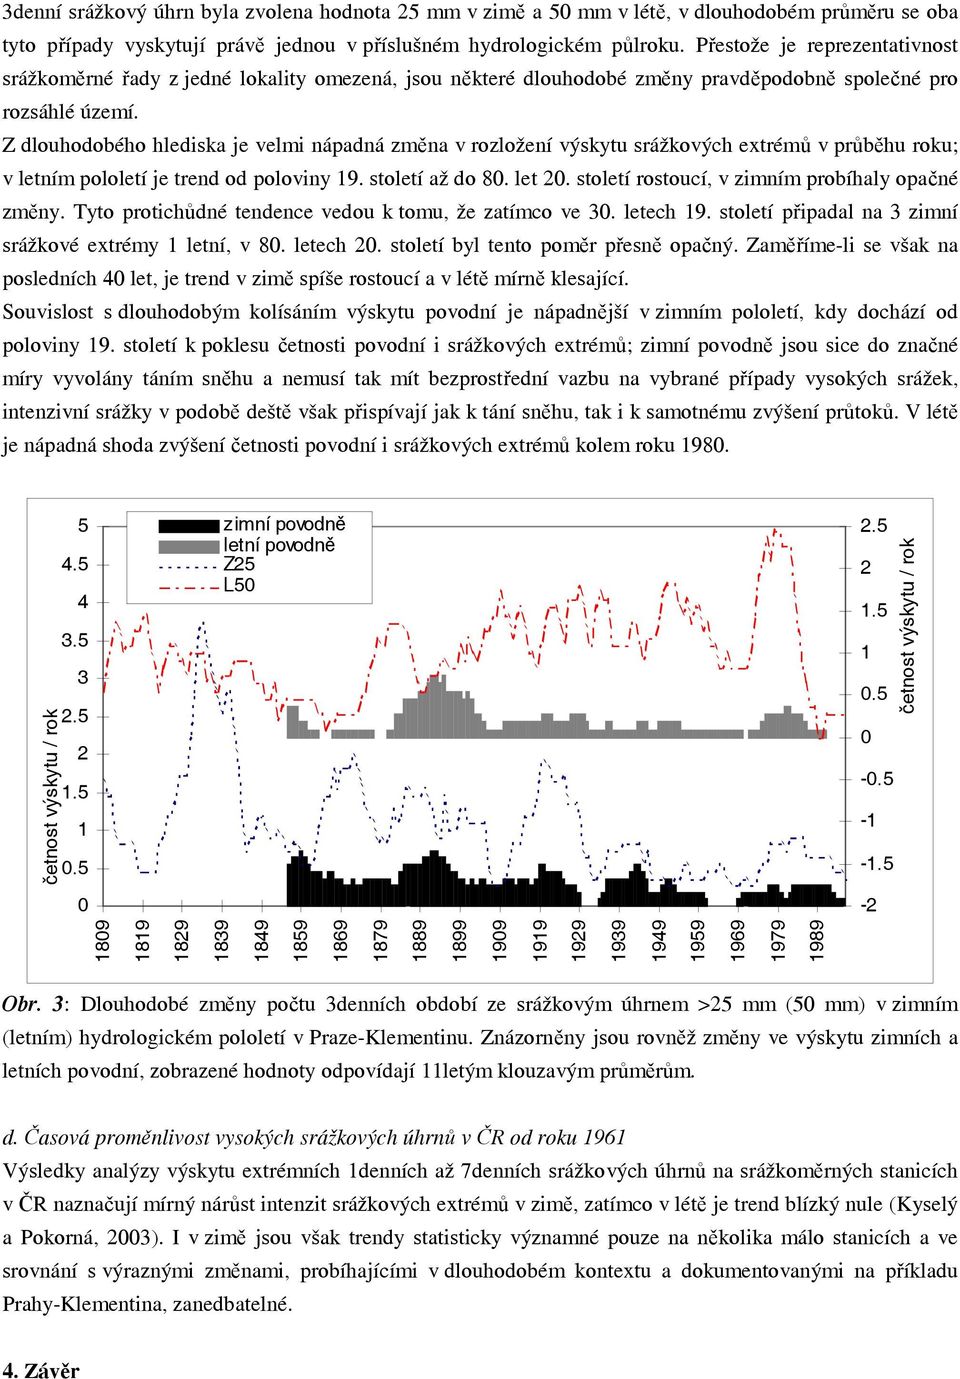 Z dlouhodobého hlediska je velmi nápadná změna v rozložení výskytu srážkových extrémů v průběhu roku; v letním pololetí je trend od poloviny 9. století až do 8. let 2.